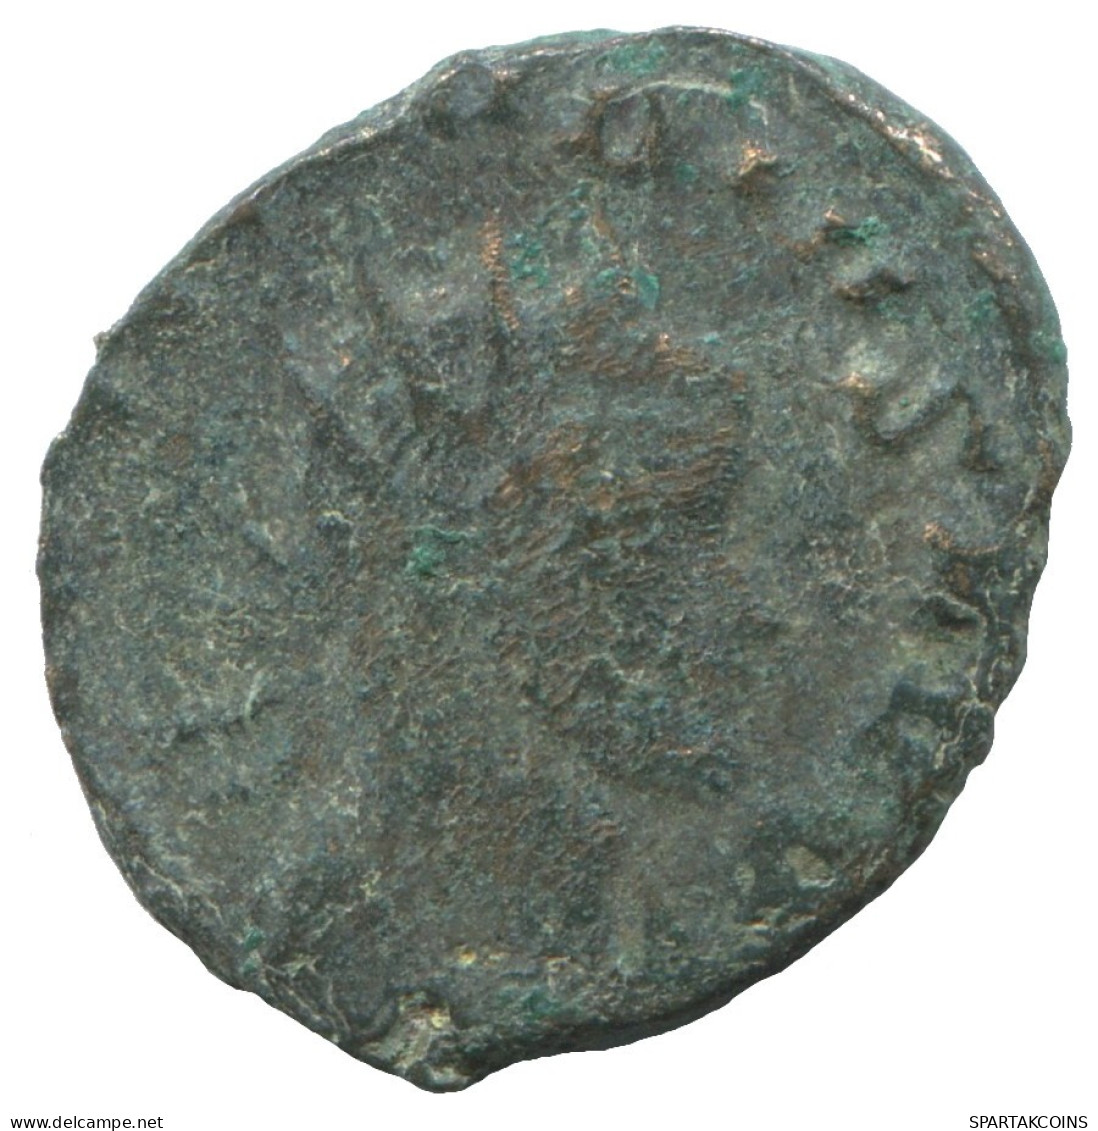 GALLIENUS ROMAN IMPERIO Follis Antiguo Moneda 2.8g/19mm #SAV1148.9.E.A - Der Soldatenkaiser (die Militärkrise) (235 / 284)